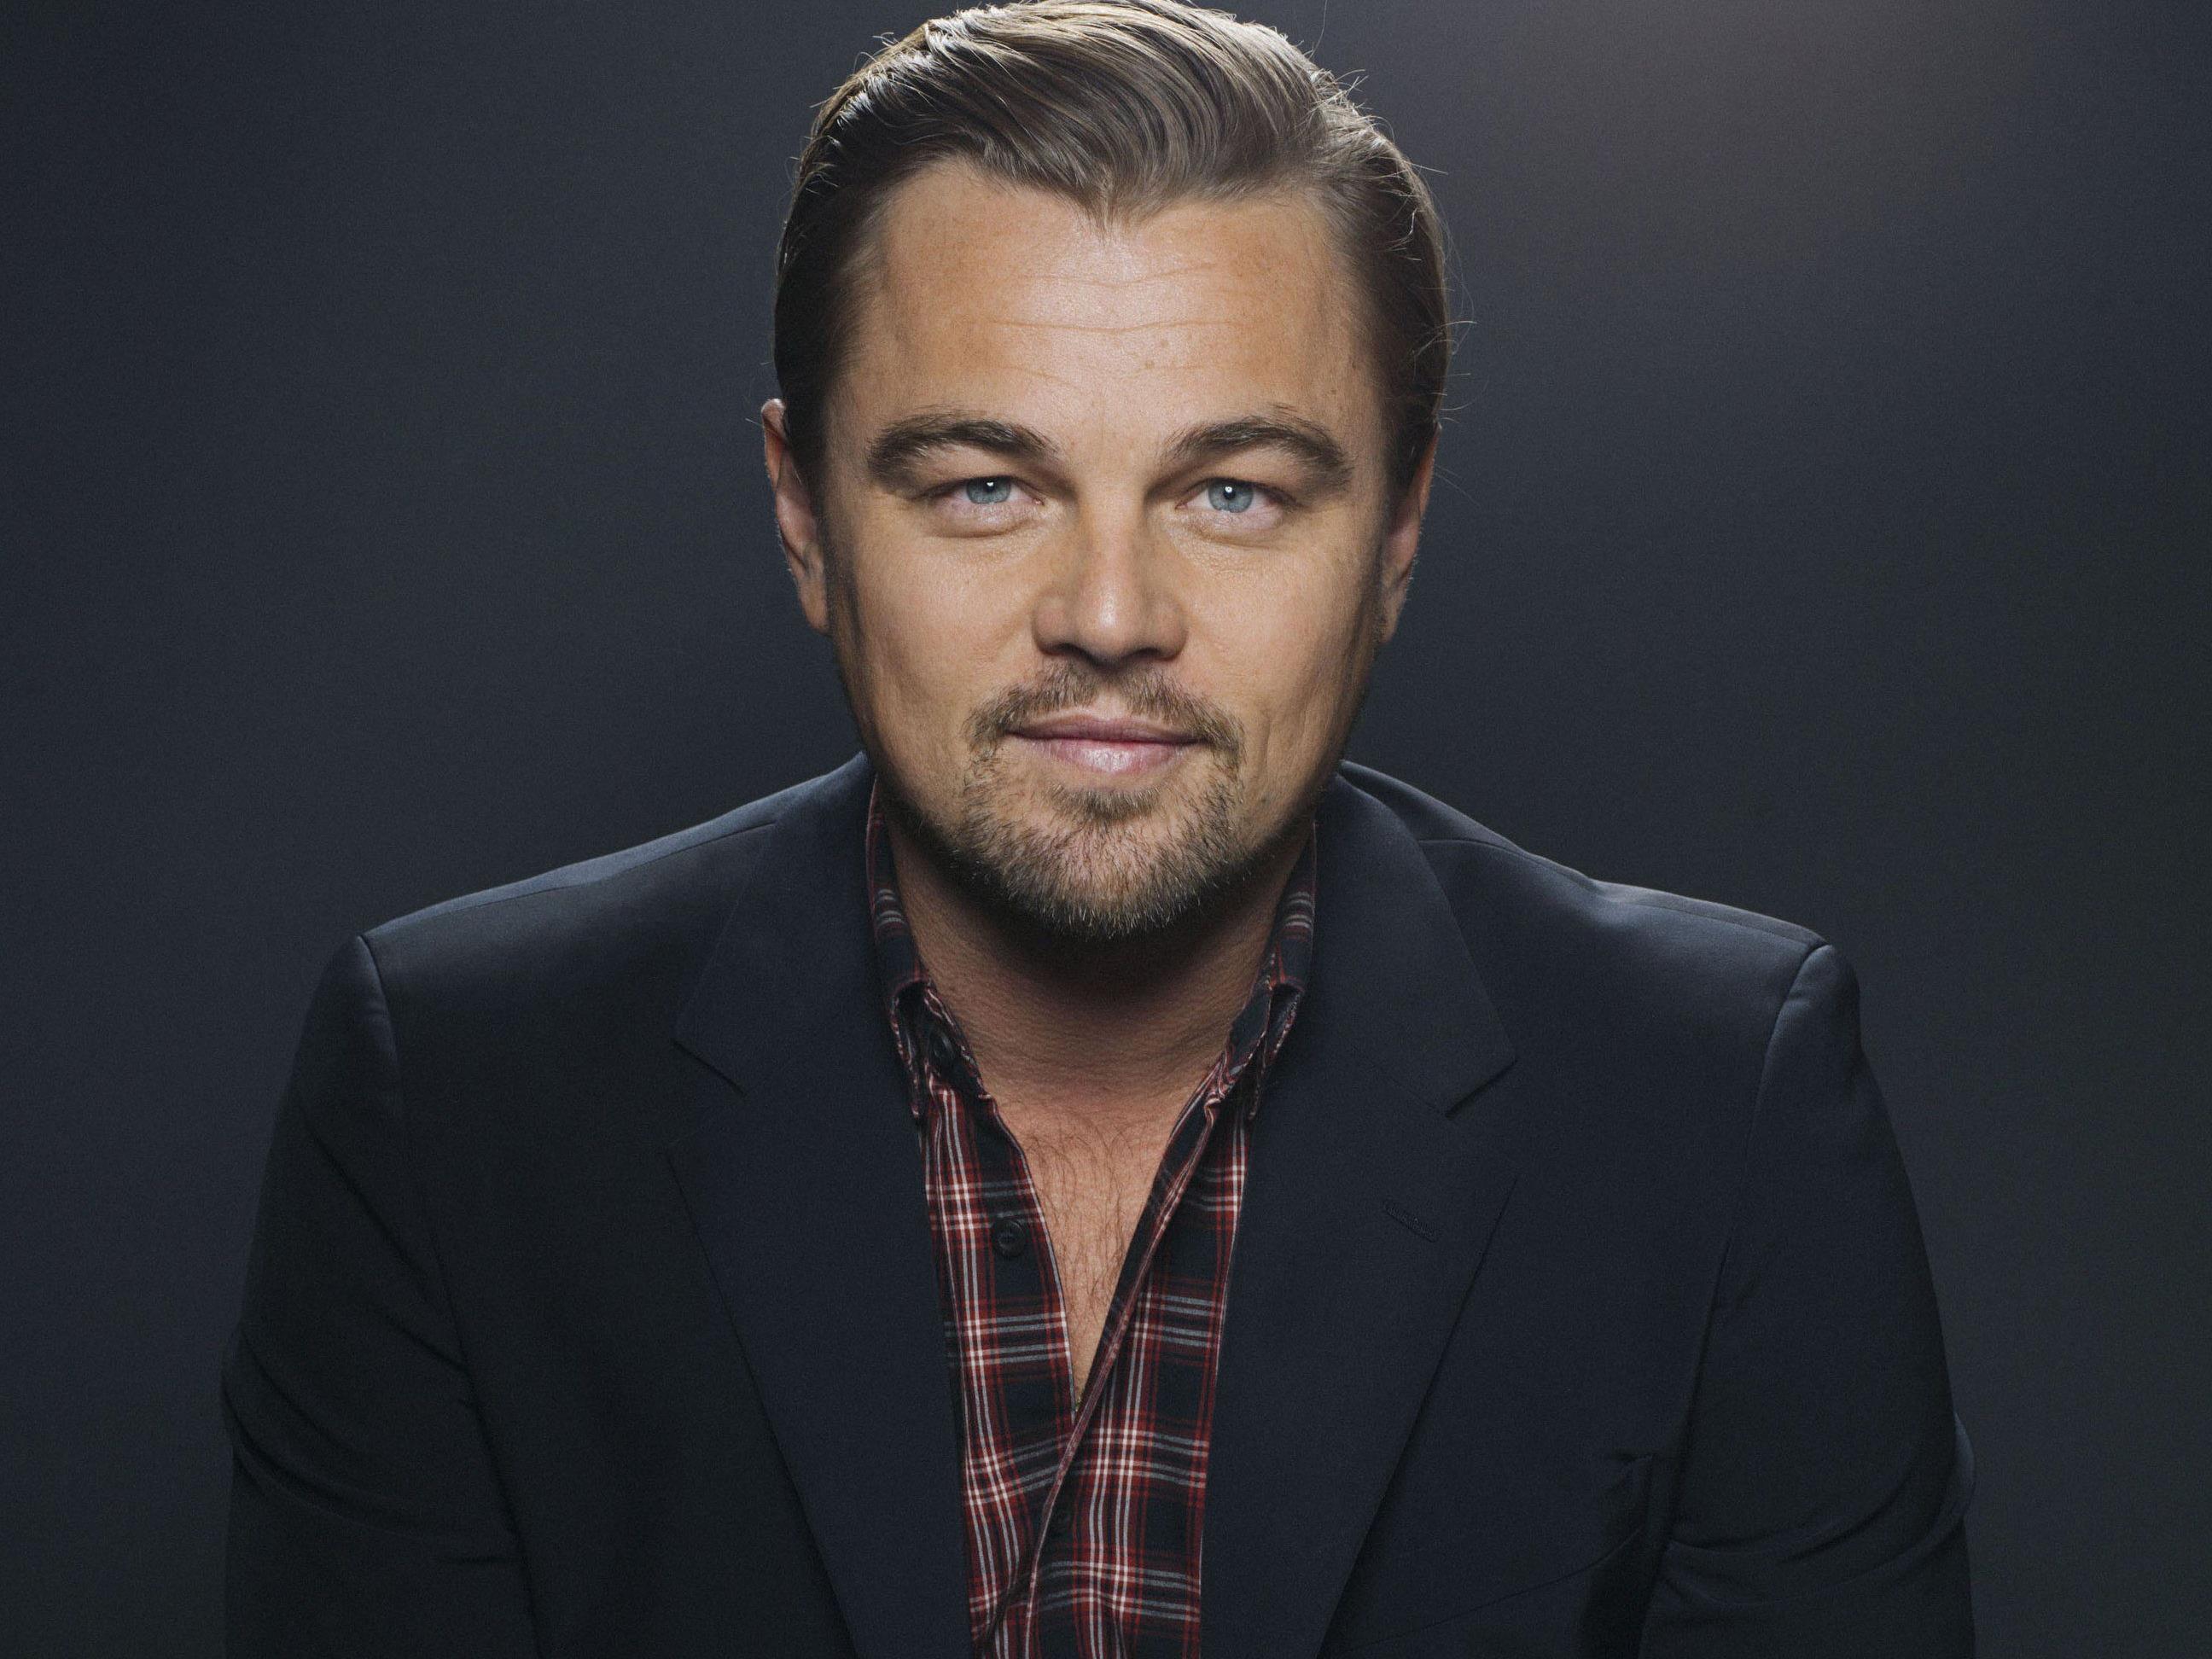 Leonardo DiCaprio feiert am 11.11. seinen 40. Geburtstag.